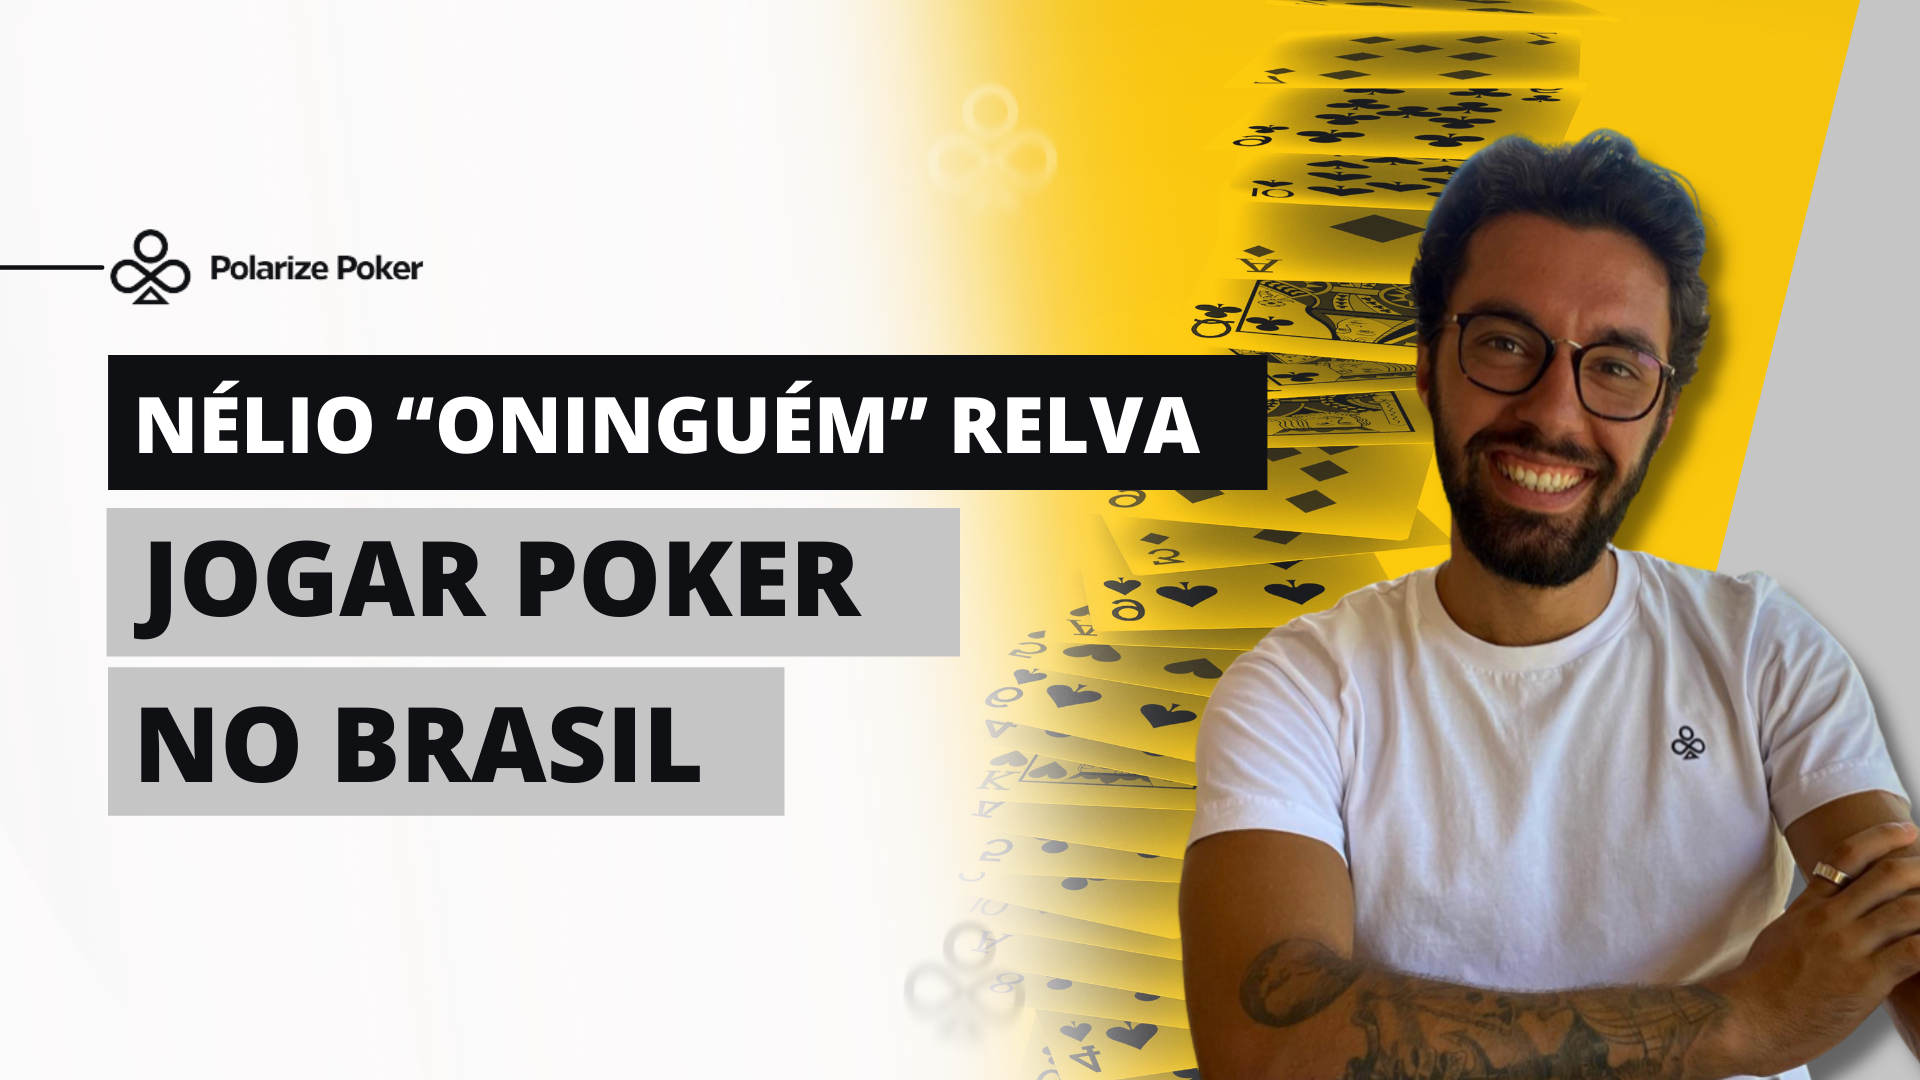 Nélio jogar poker no brasil